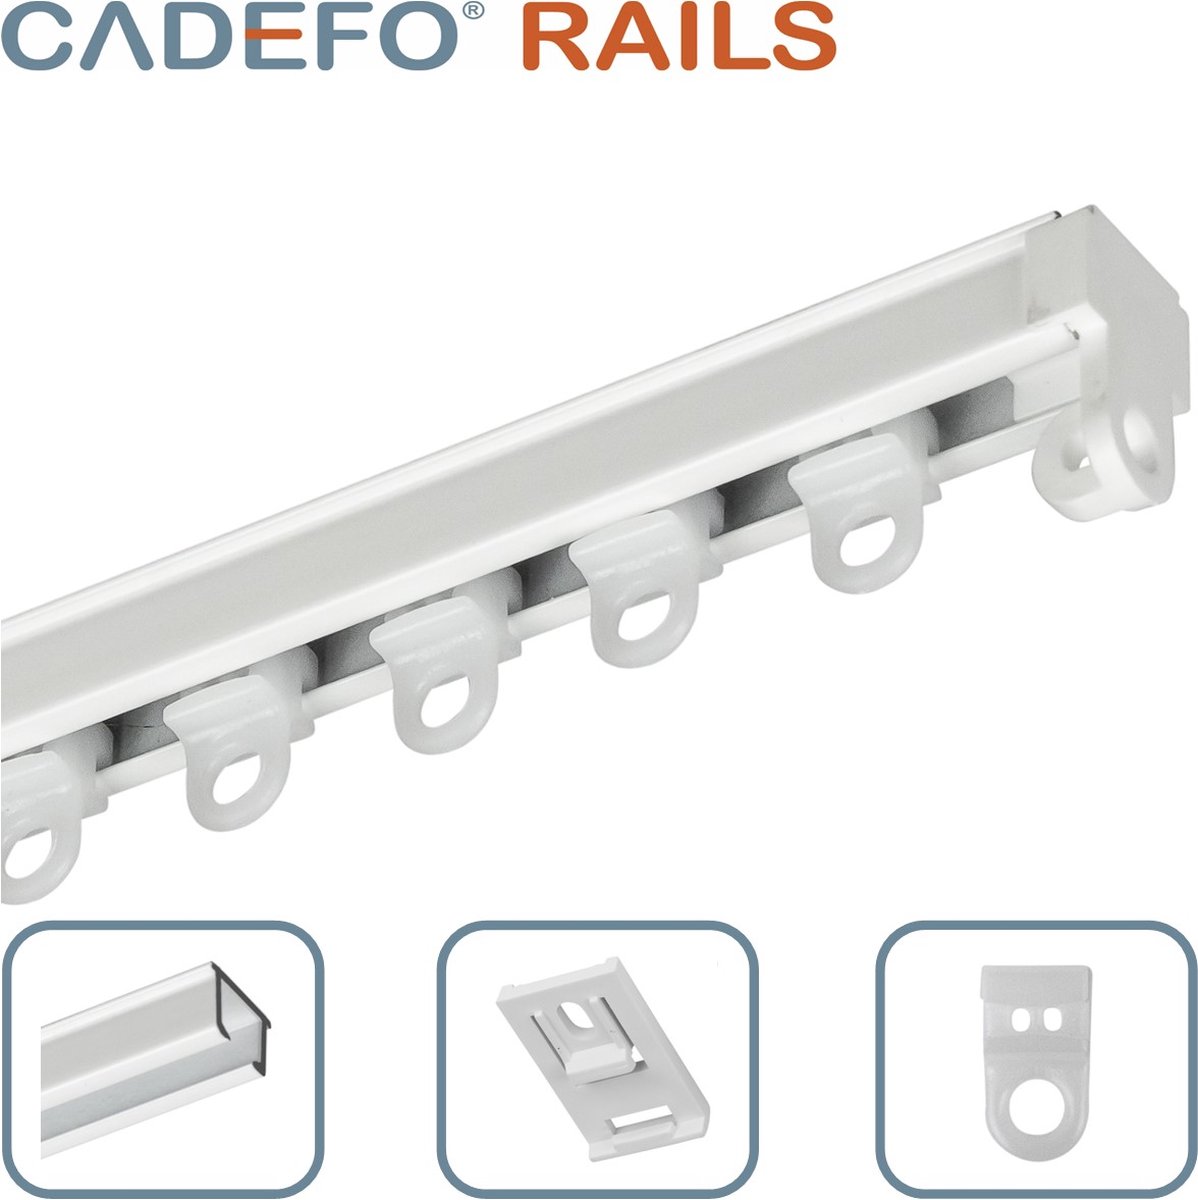 CADEFO RAILS (151 - 200 cm) Gordijnrails - Compleet op maat! - UIT 1 STUK - Leverbaar tot 6 meter - Plafondbevestiging - Lengte 199 cm